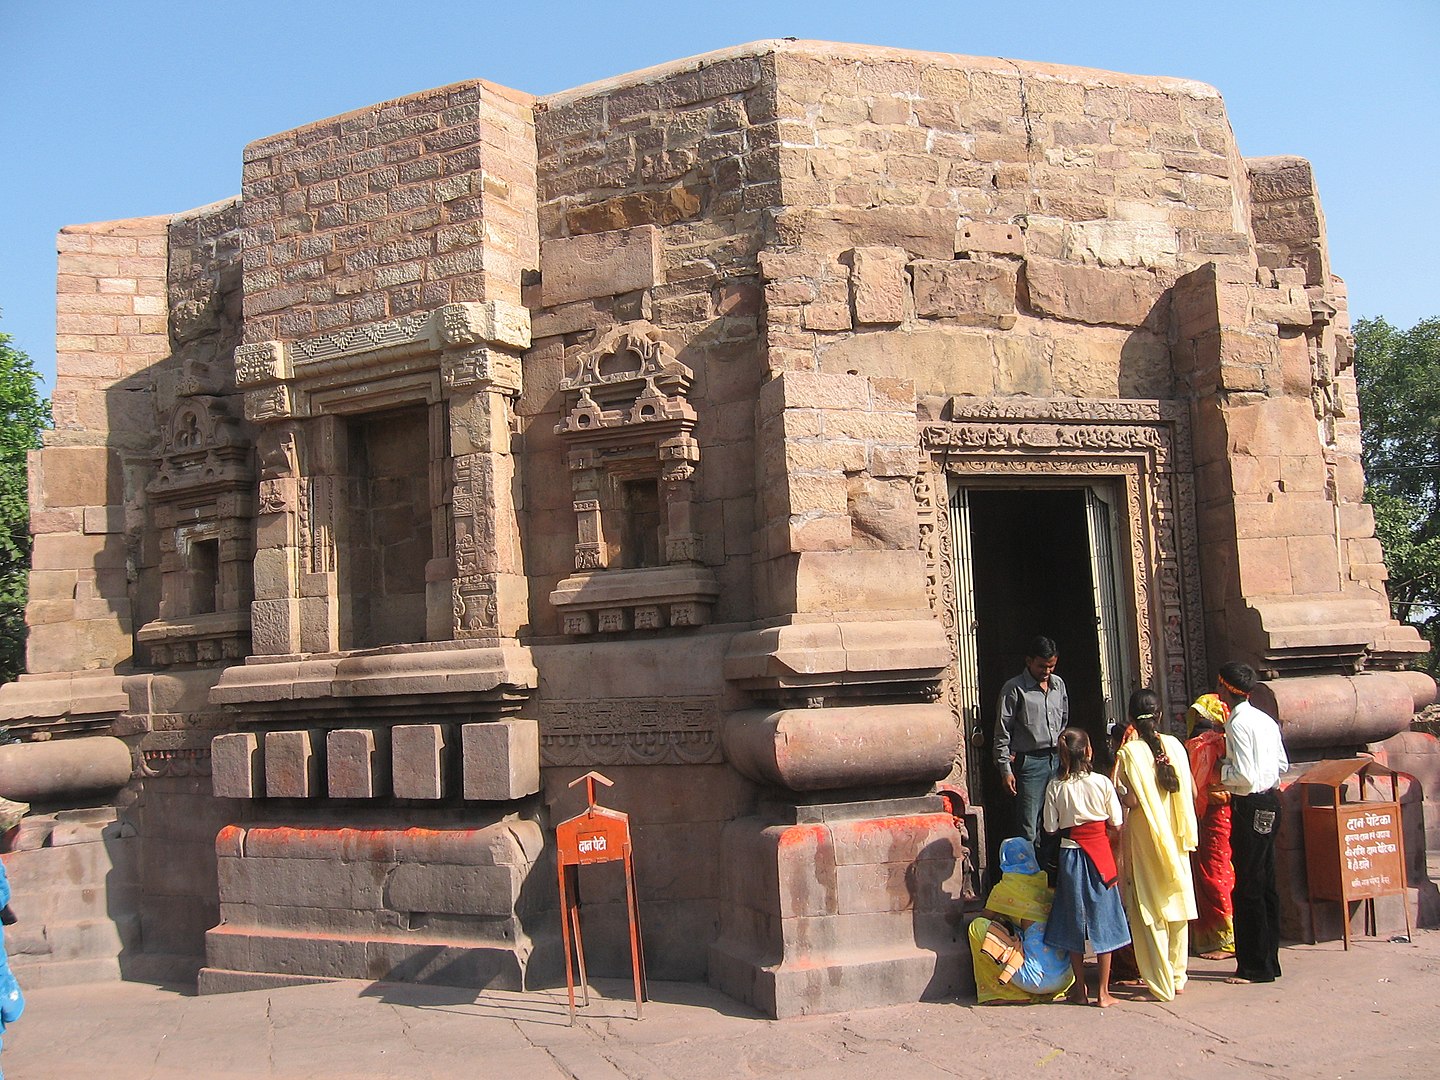 Mundeshwari Devi Temple